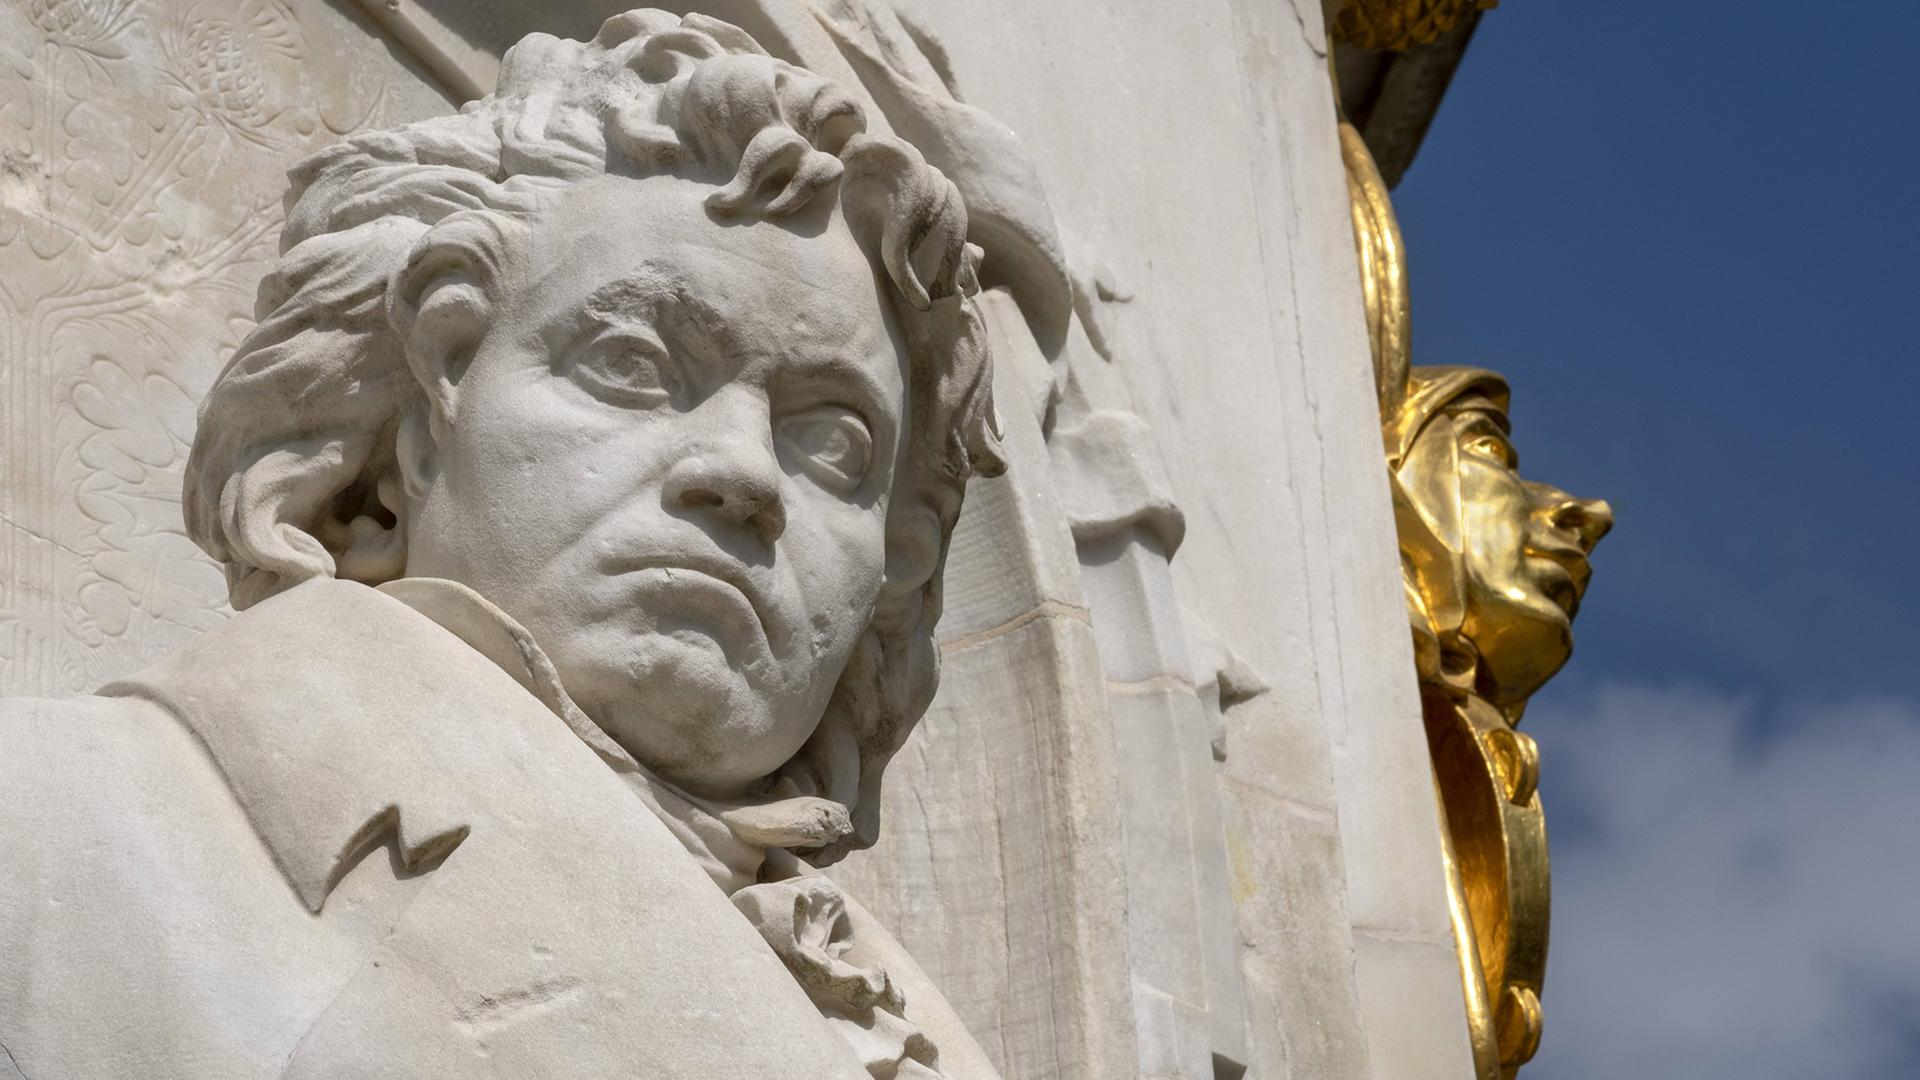 Ein Denkmal von Ludwig van Beethoven aus hellem Stein, zu sehen ist er von Kopf bis Brust, im Hintergrund ein vergoldeter Teil des Denkmals und blauer Himmel.